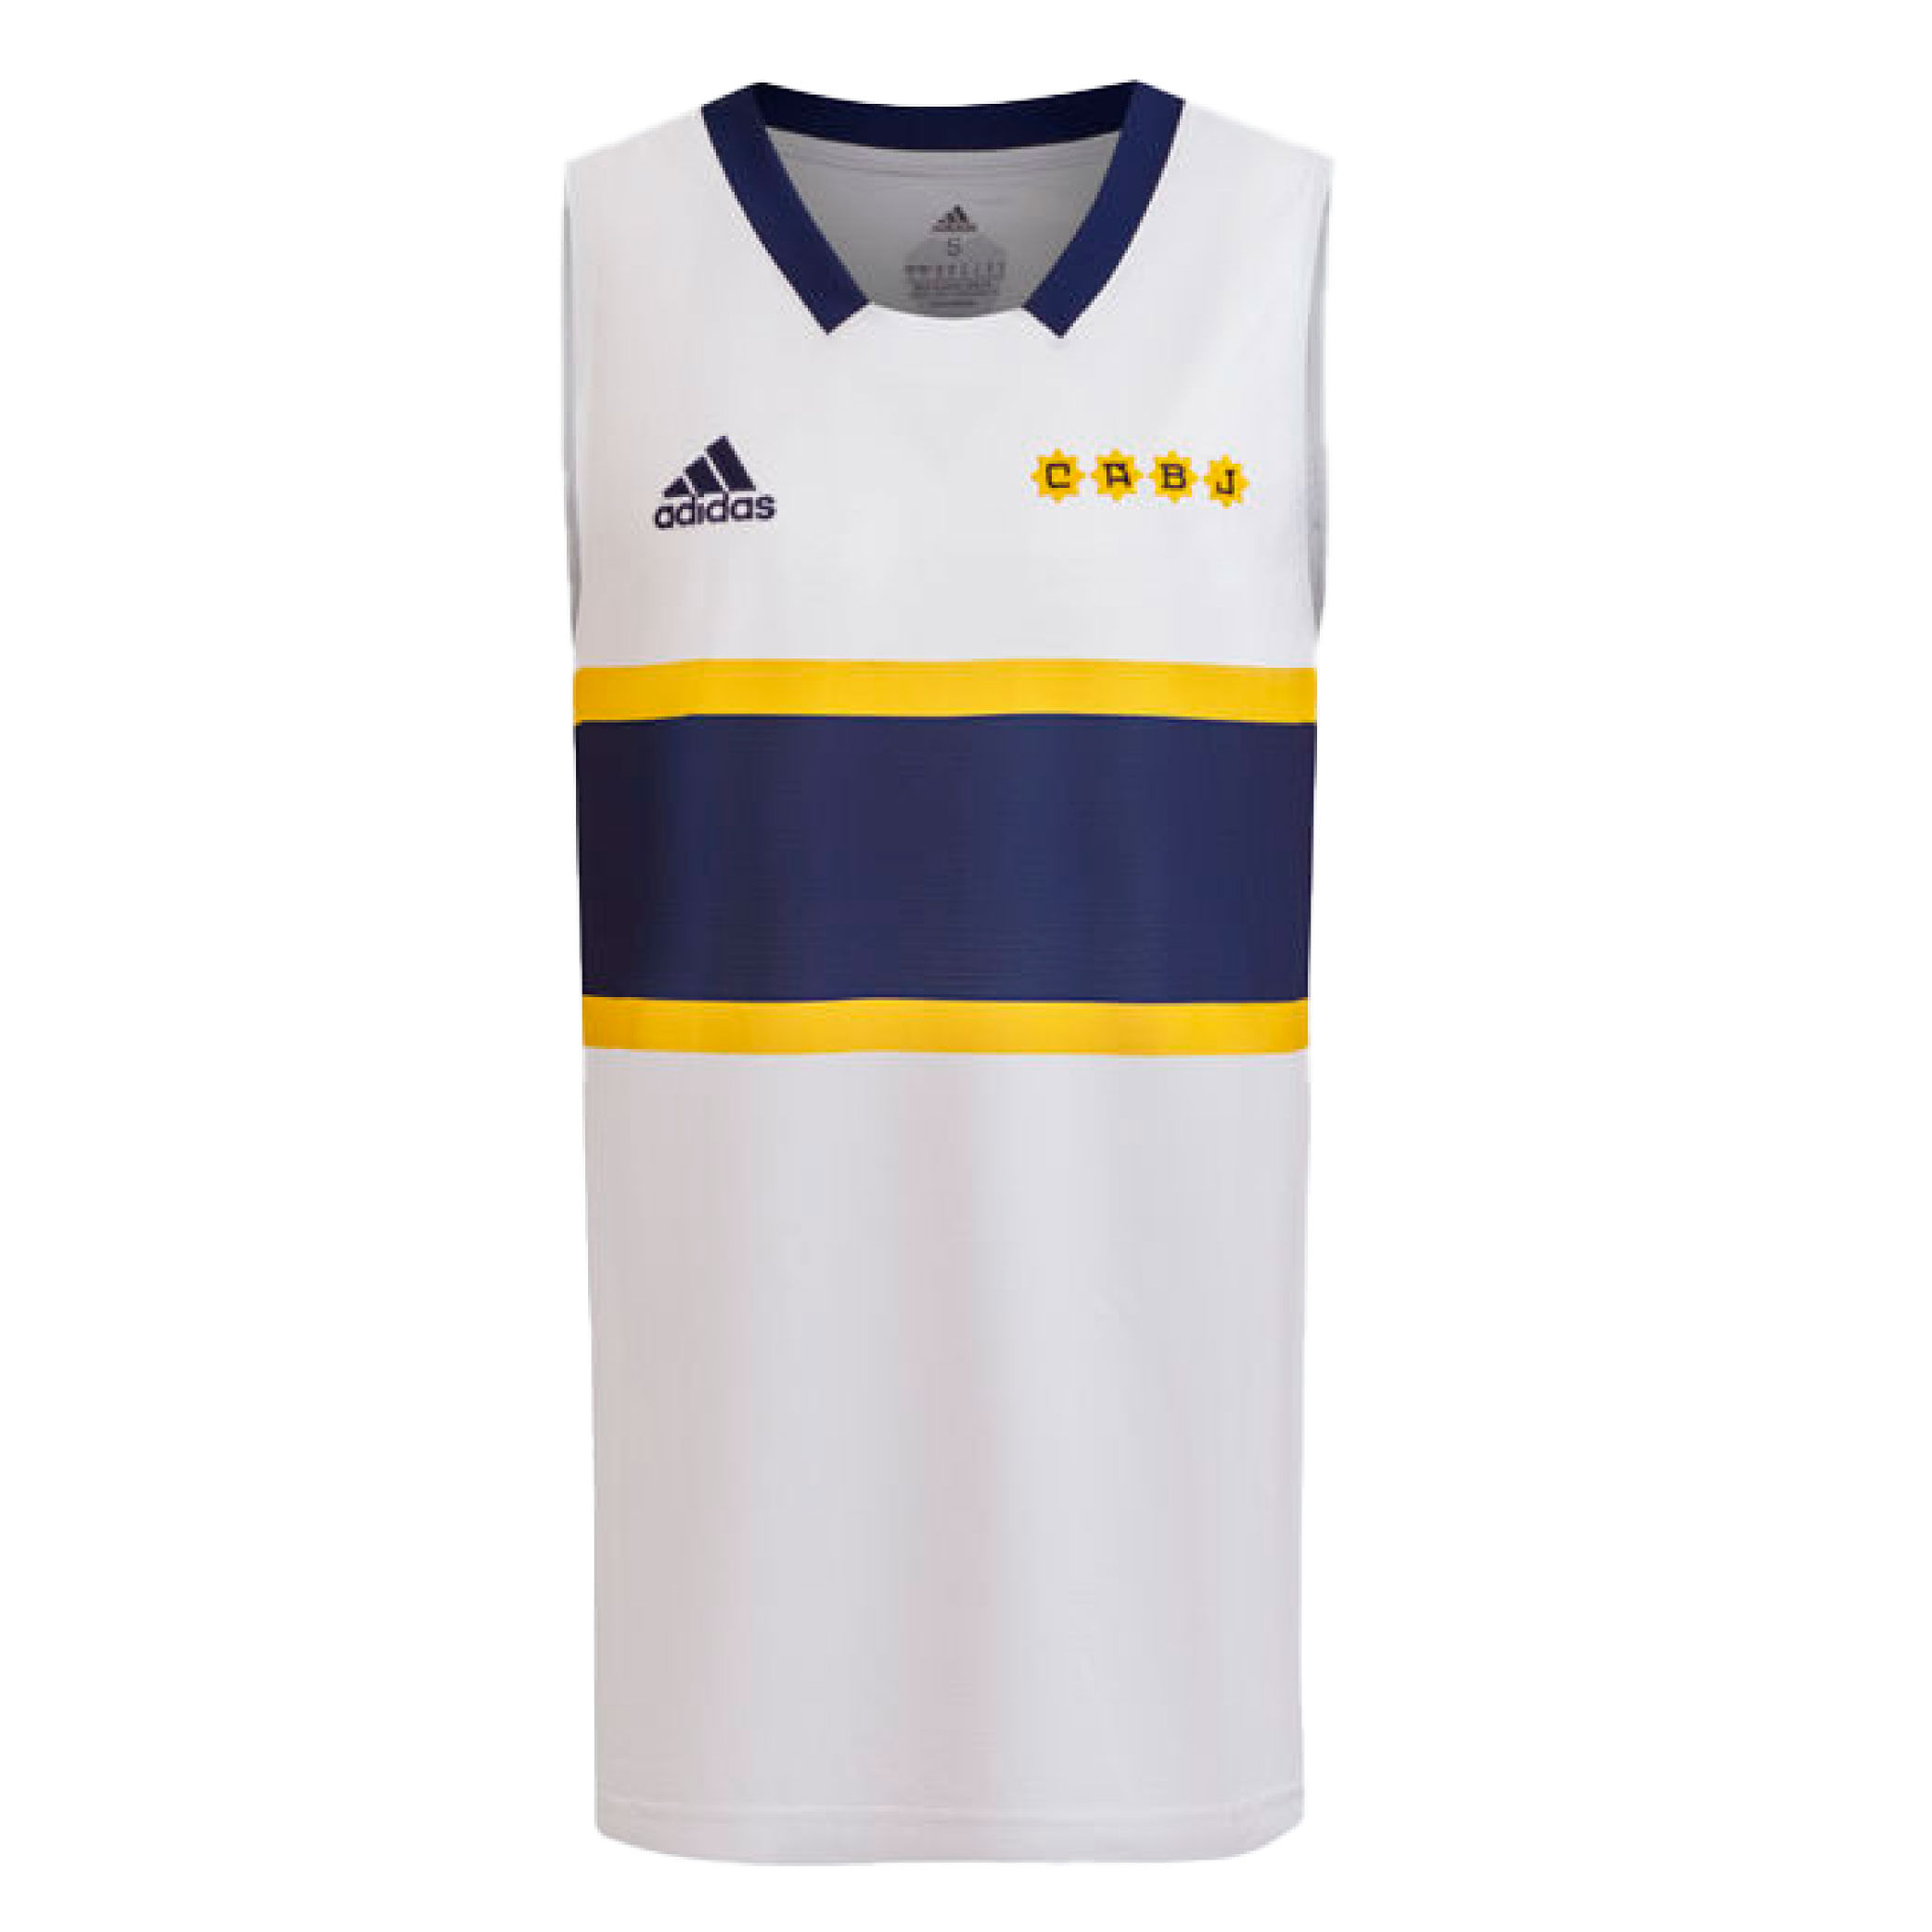 La nueva camiseta alternativa de Boca Básquet vista de frente.